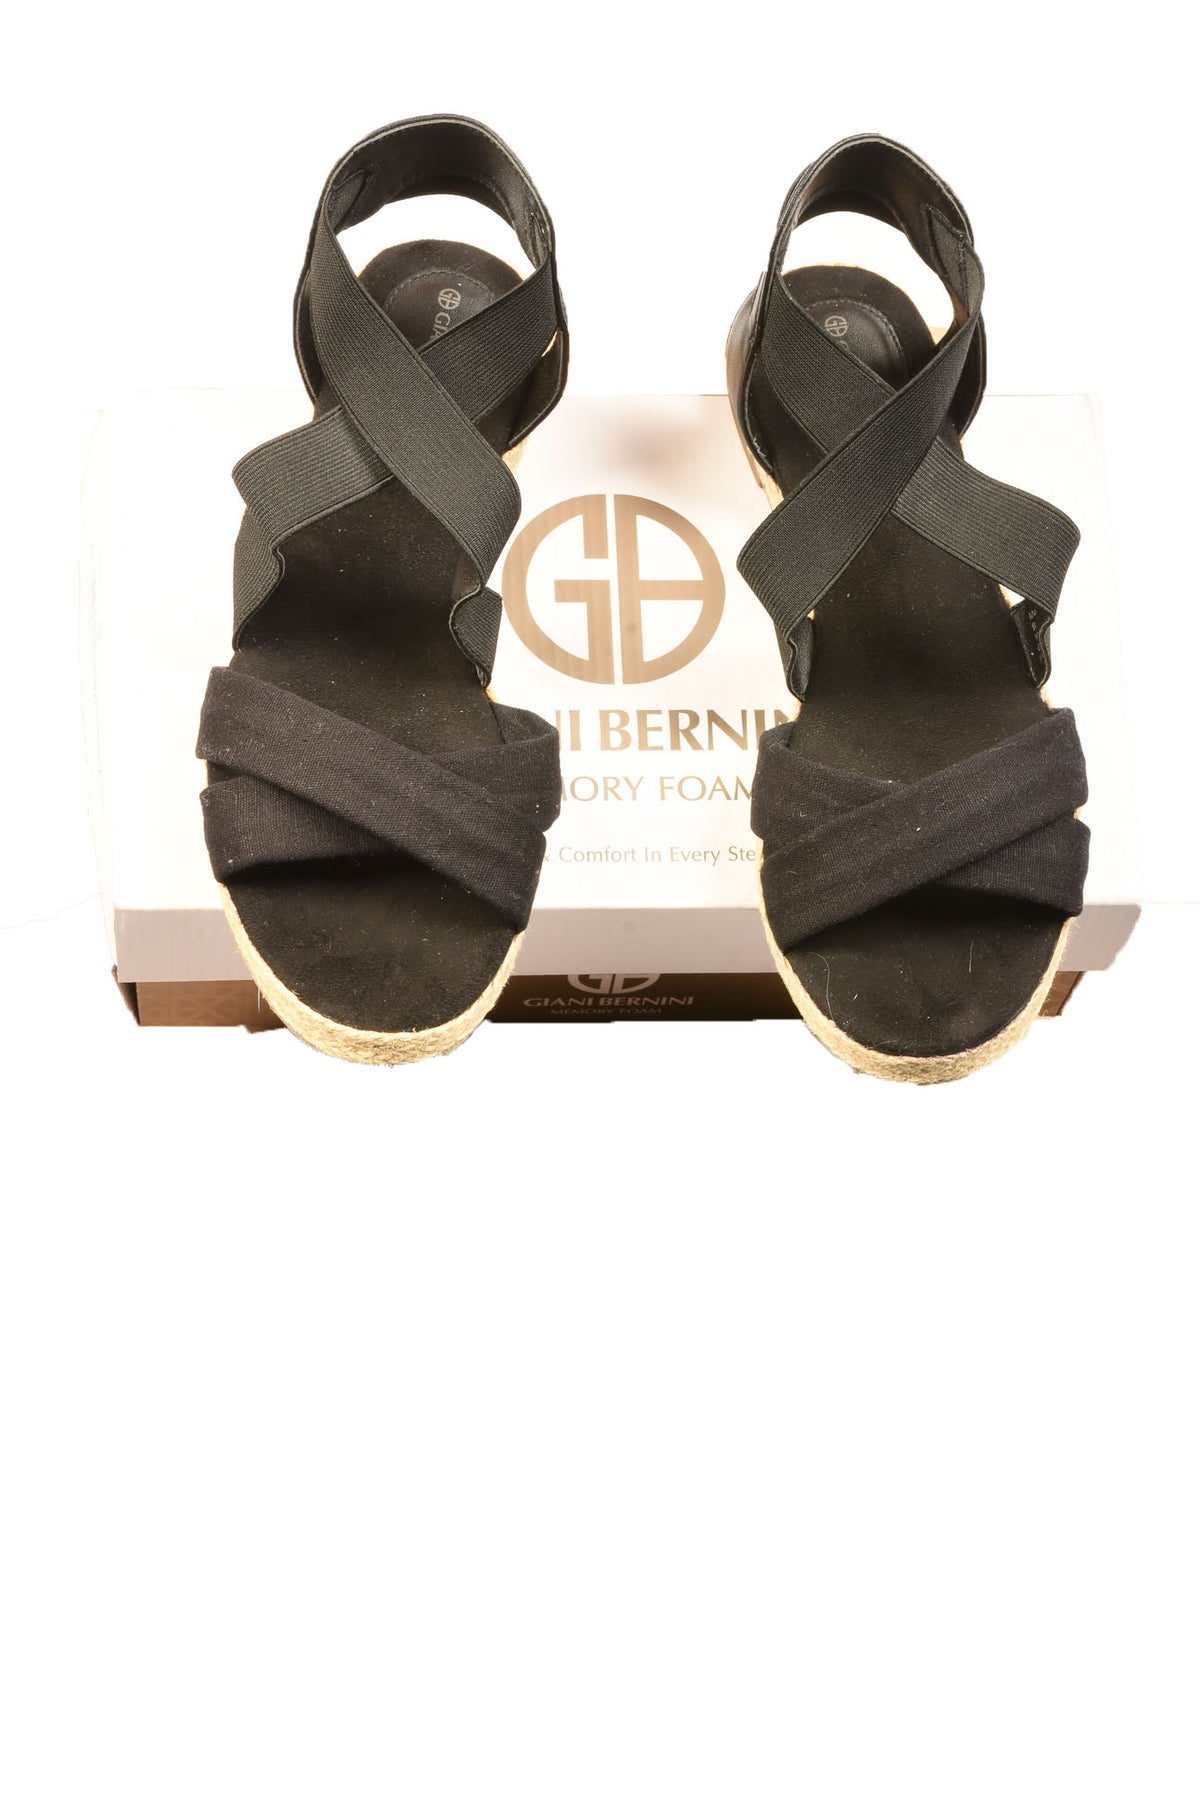 Giani Bernini Size 8M Women&#39;s Shoes